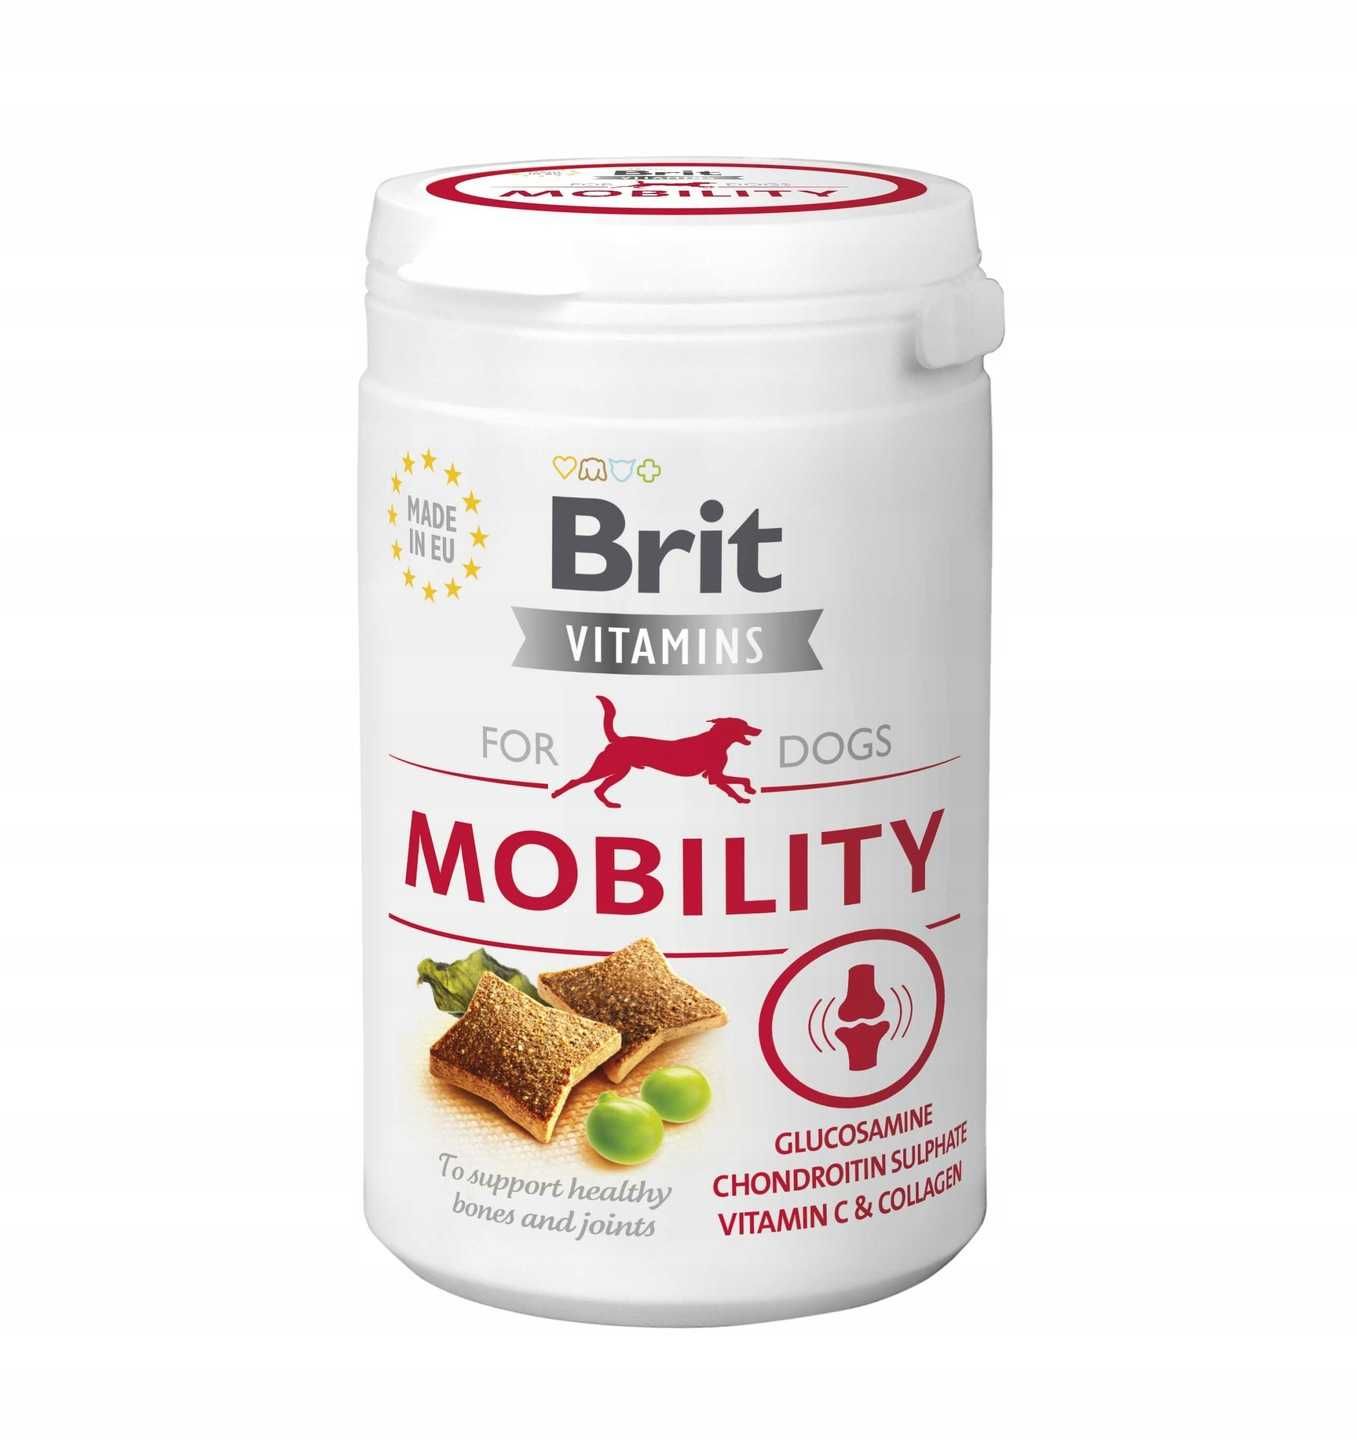 Brit Vitamins Mobility witaminy dla psa 150 g wspiera kości, mobilność